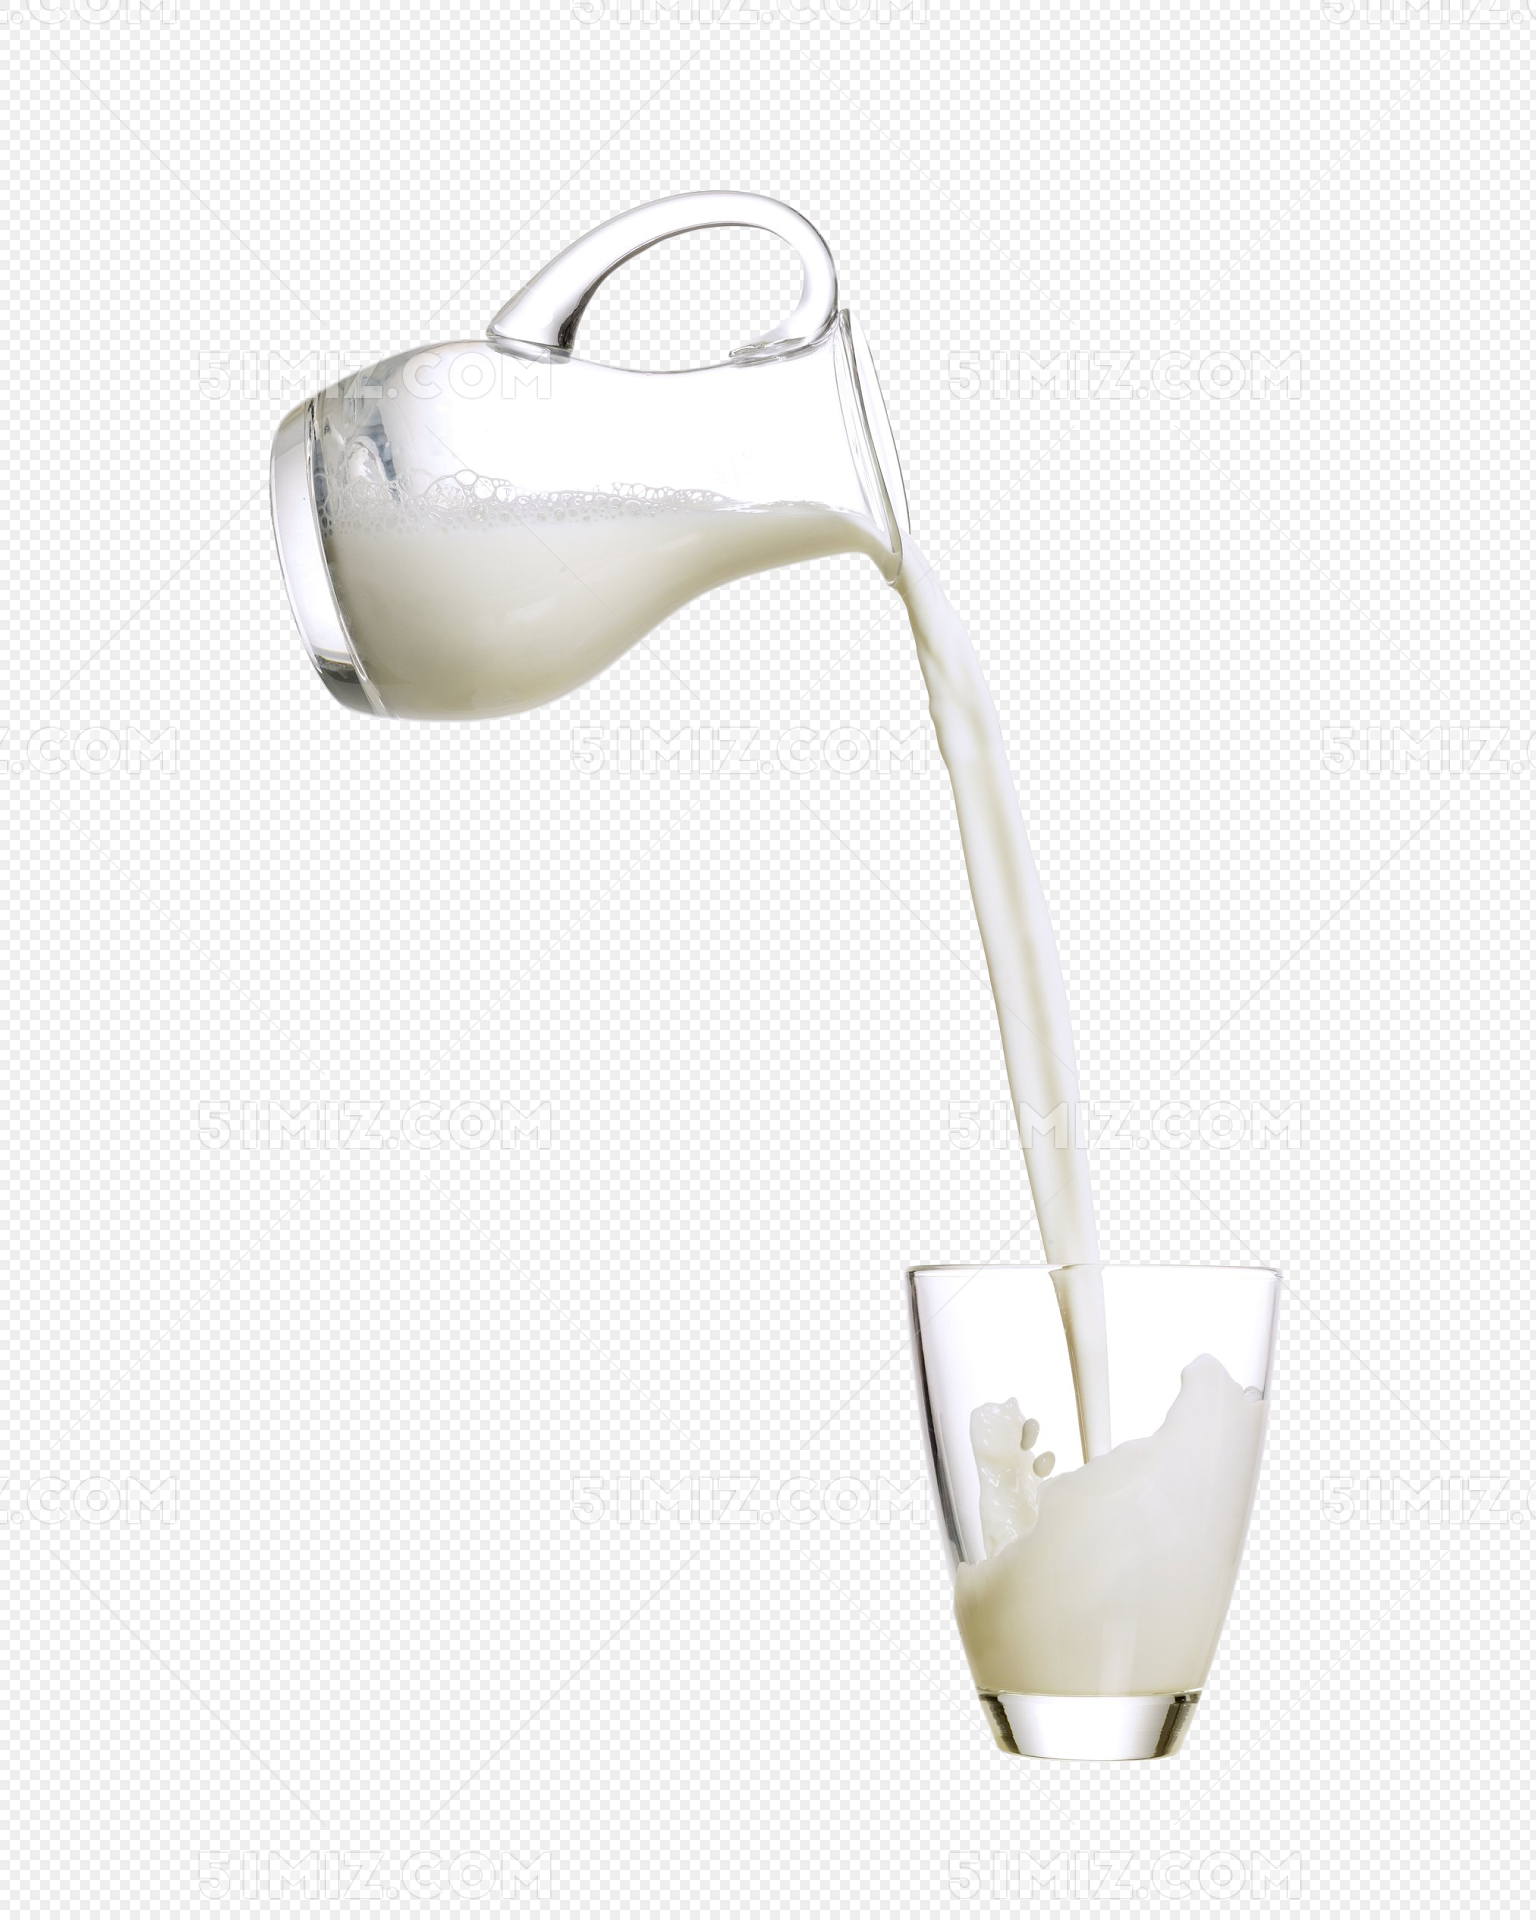 乳白色的牛奶泼溅在空中向四周扩散